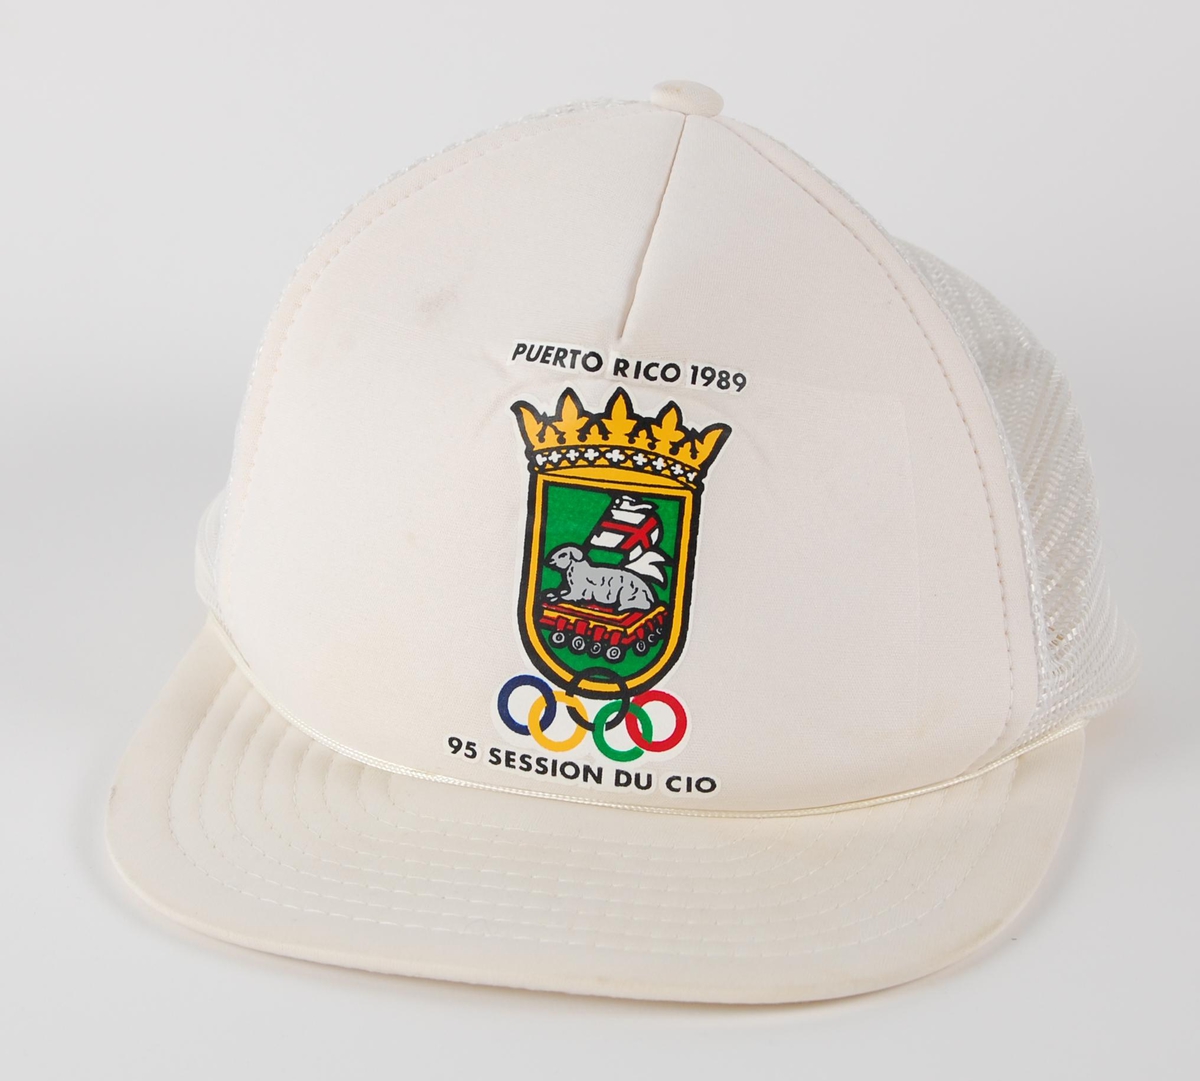 Hvit skyggelue med logo fr arrangementet "95 SESSION DU CIO" i Puerto Rico i 1989. Lua har strammespenne av plast.